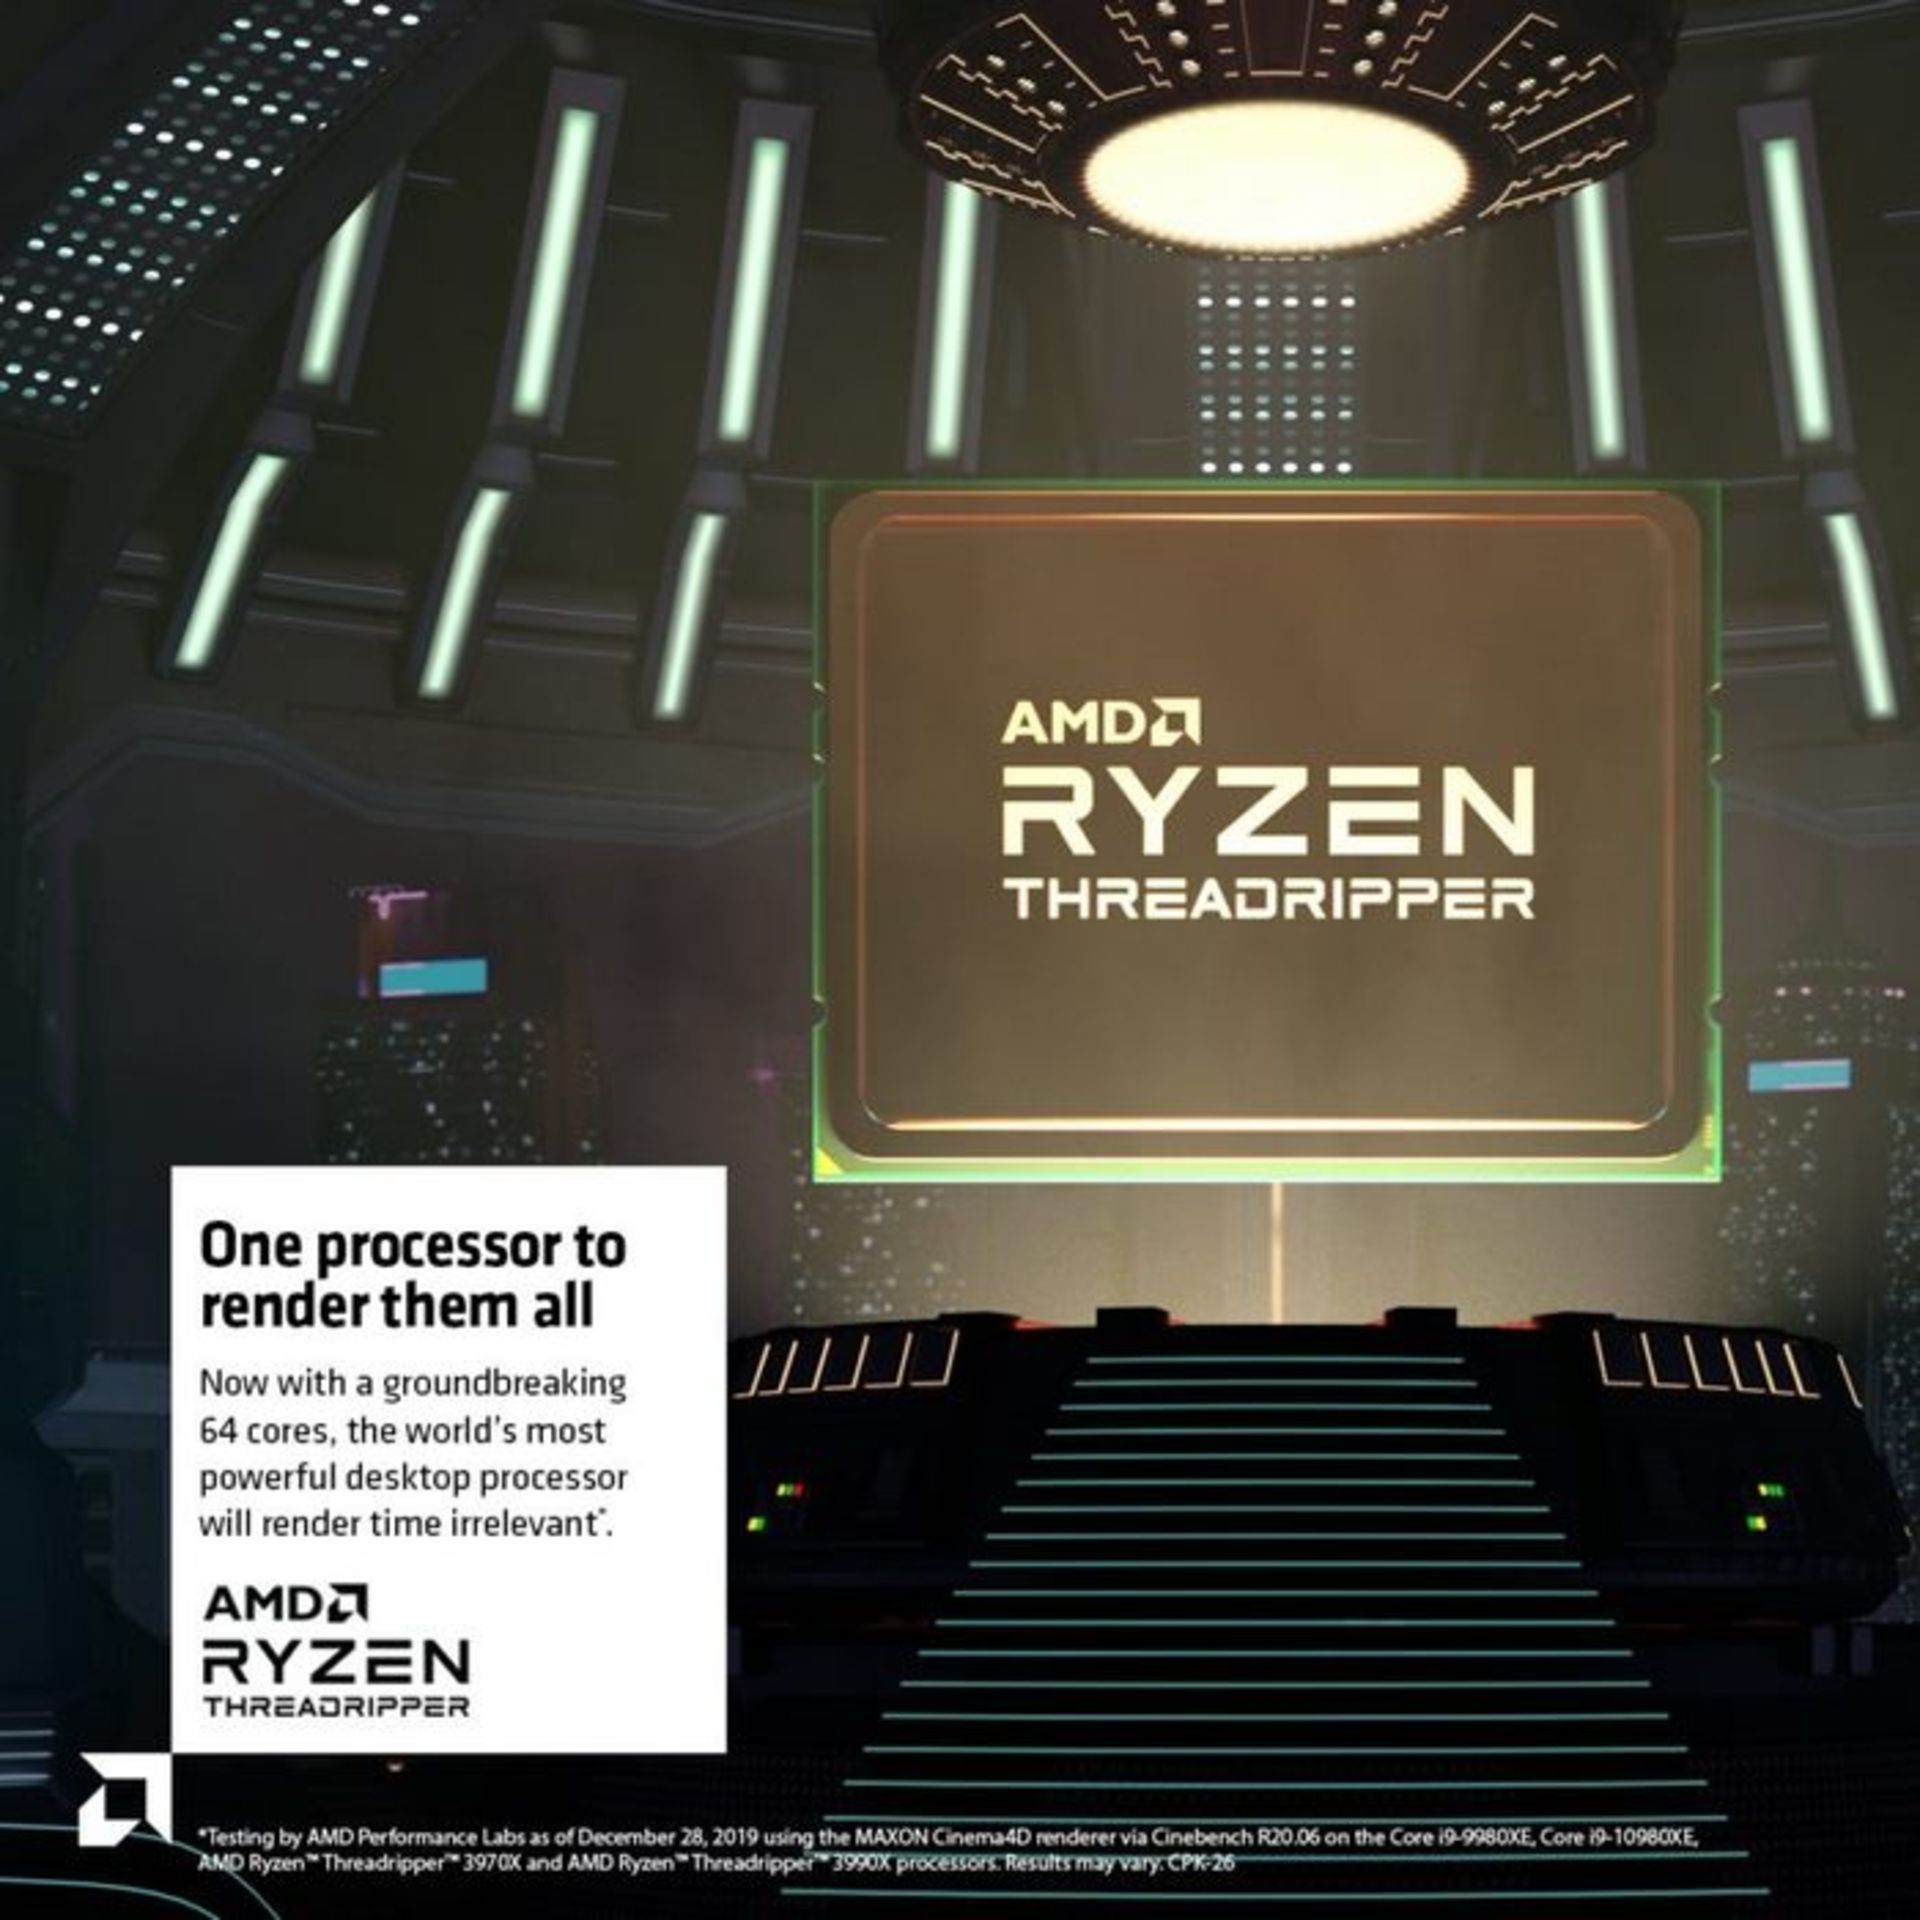 AMD رایزن تردریپر ٰ3990X